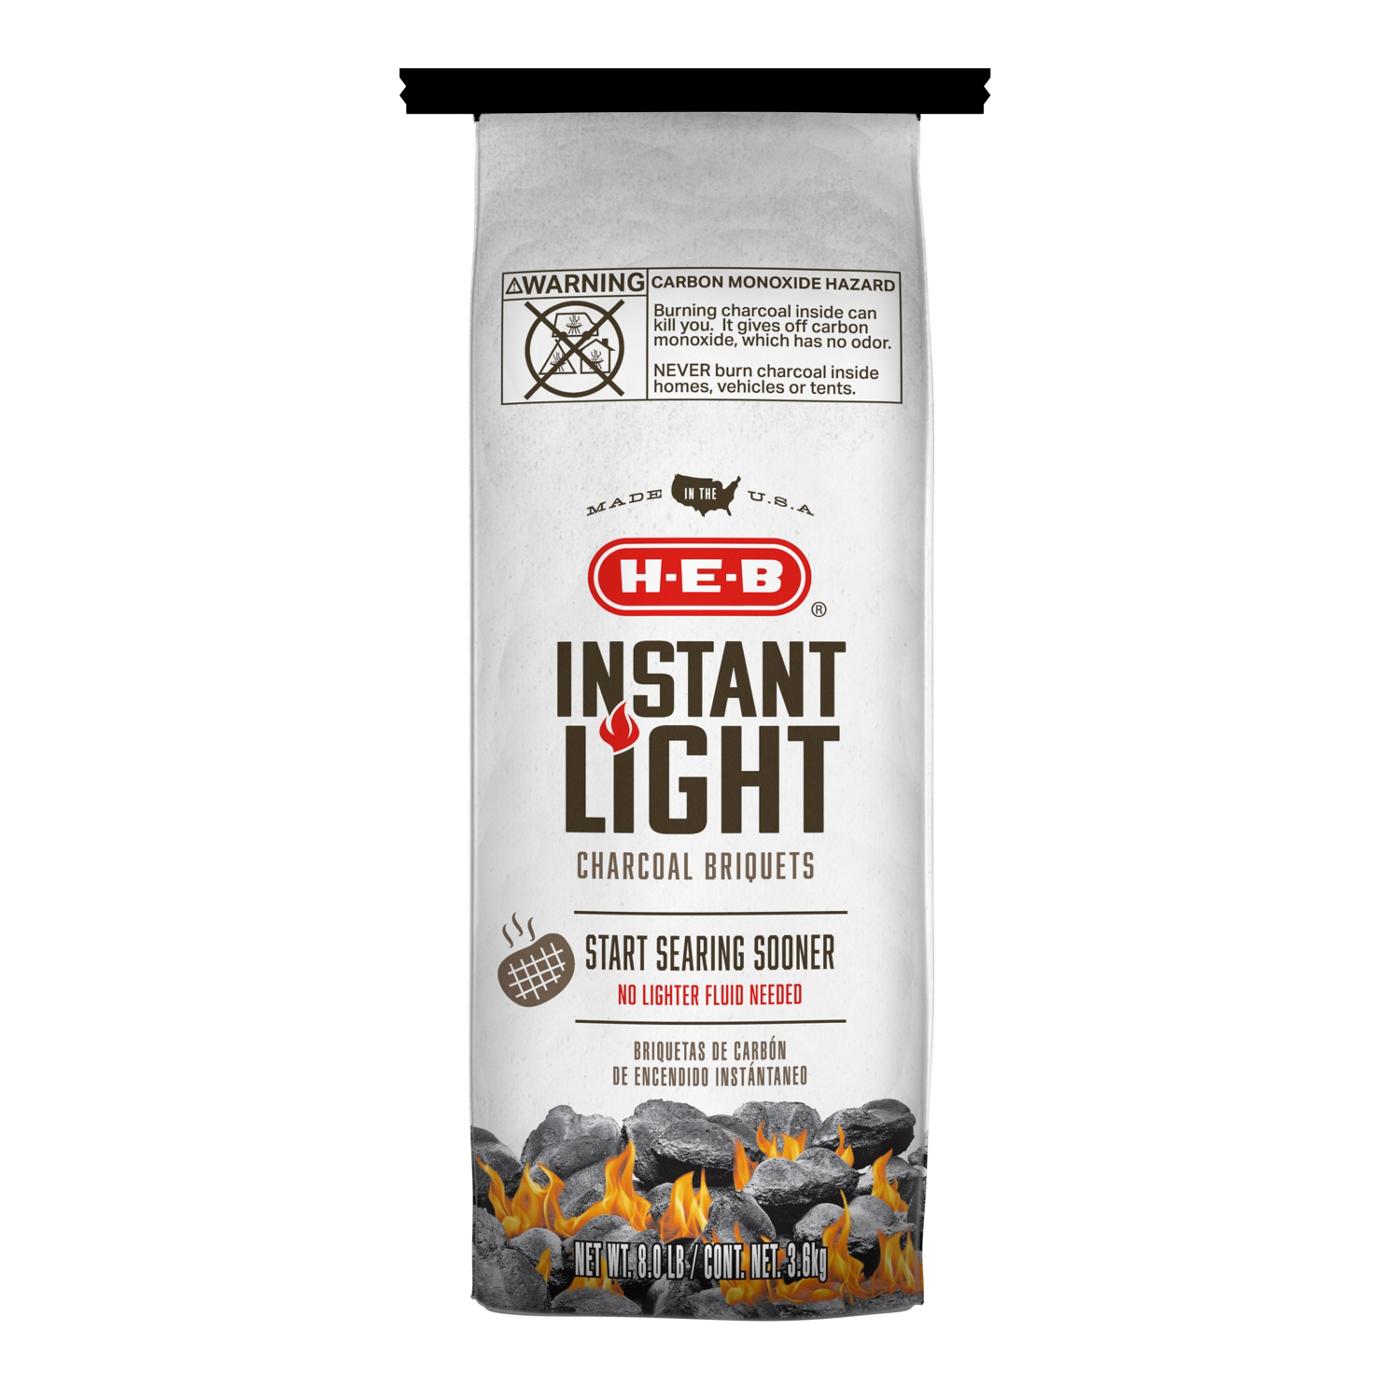 H-E-B Instant Light Charcoal Briquets; image 1 of 2